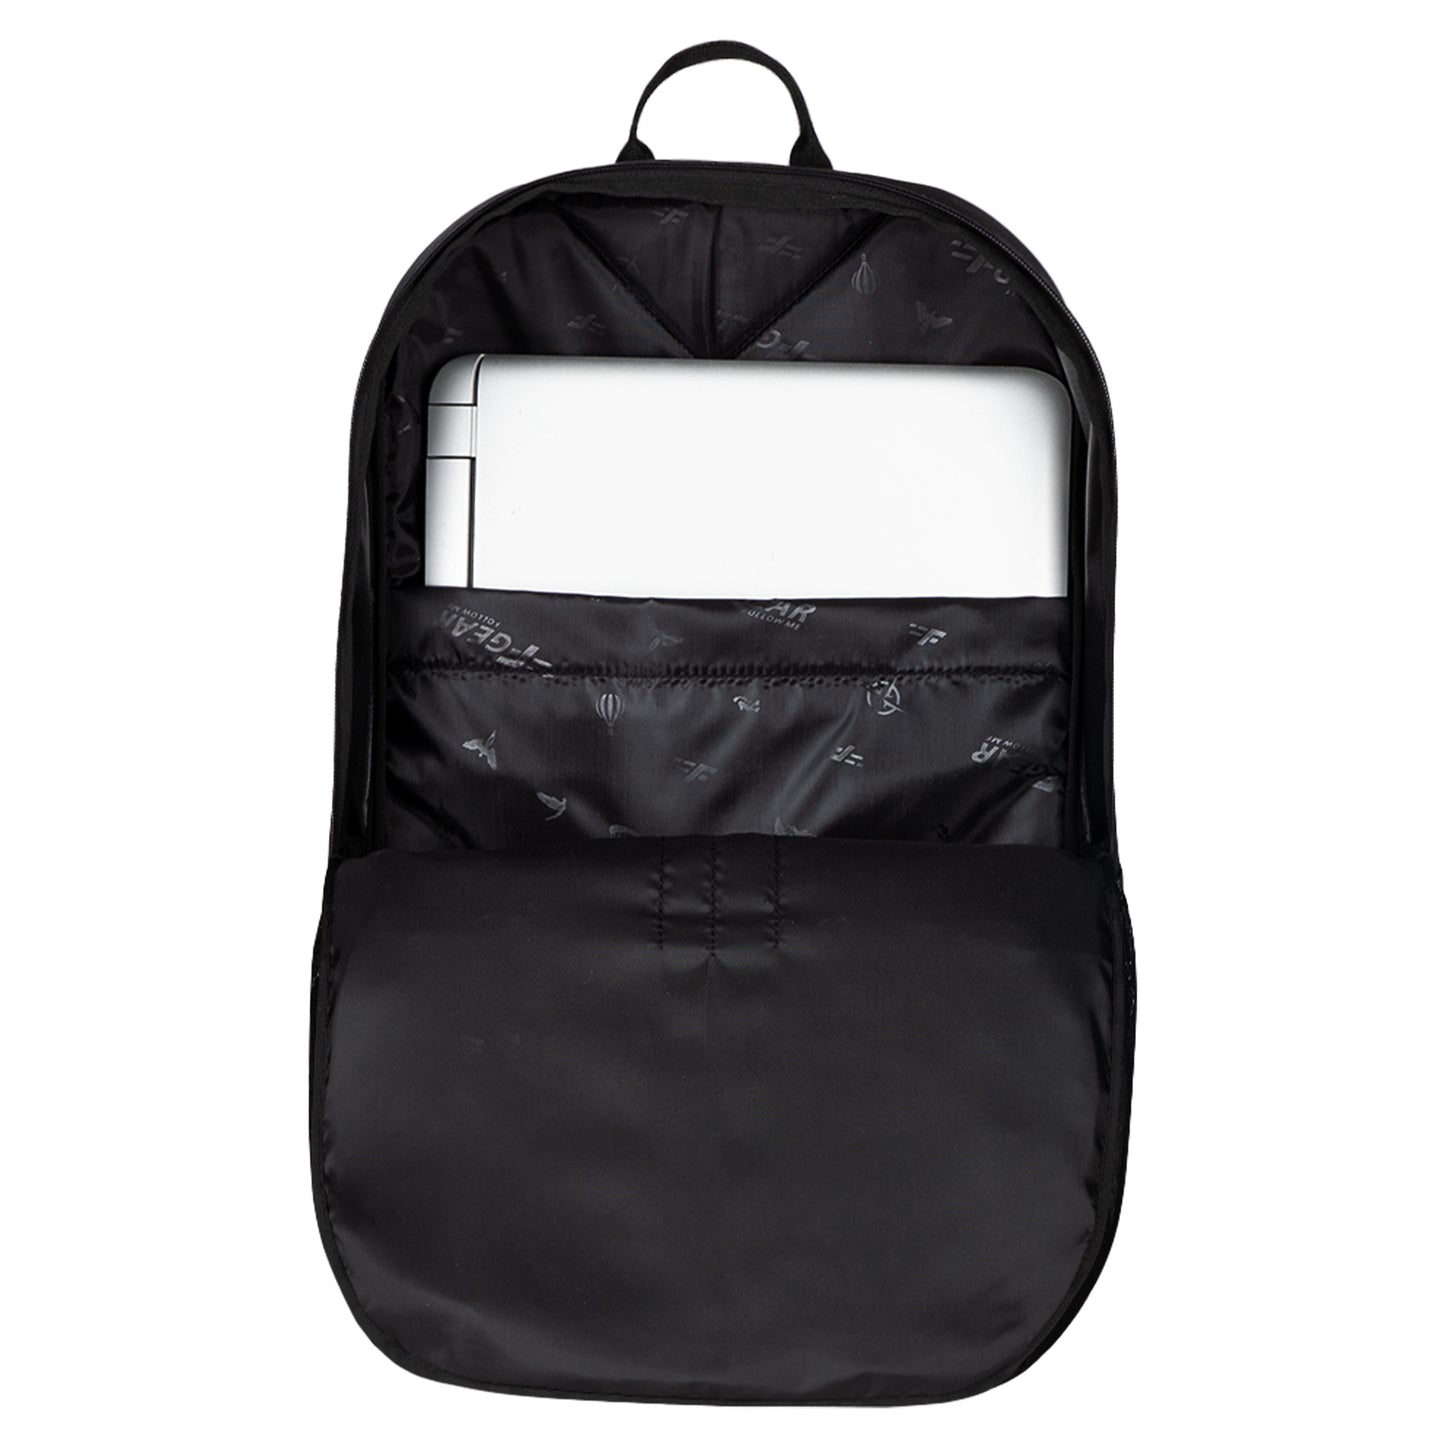 Cole 27L Black Backpack